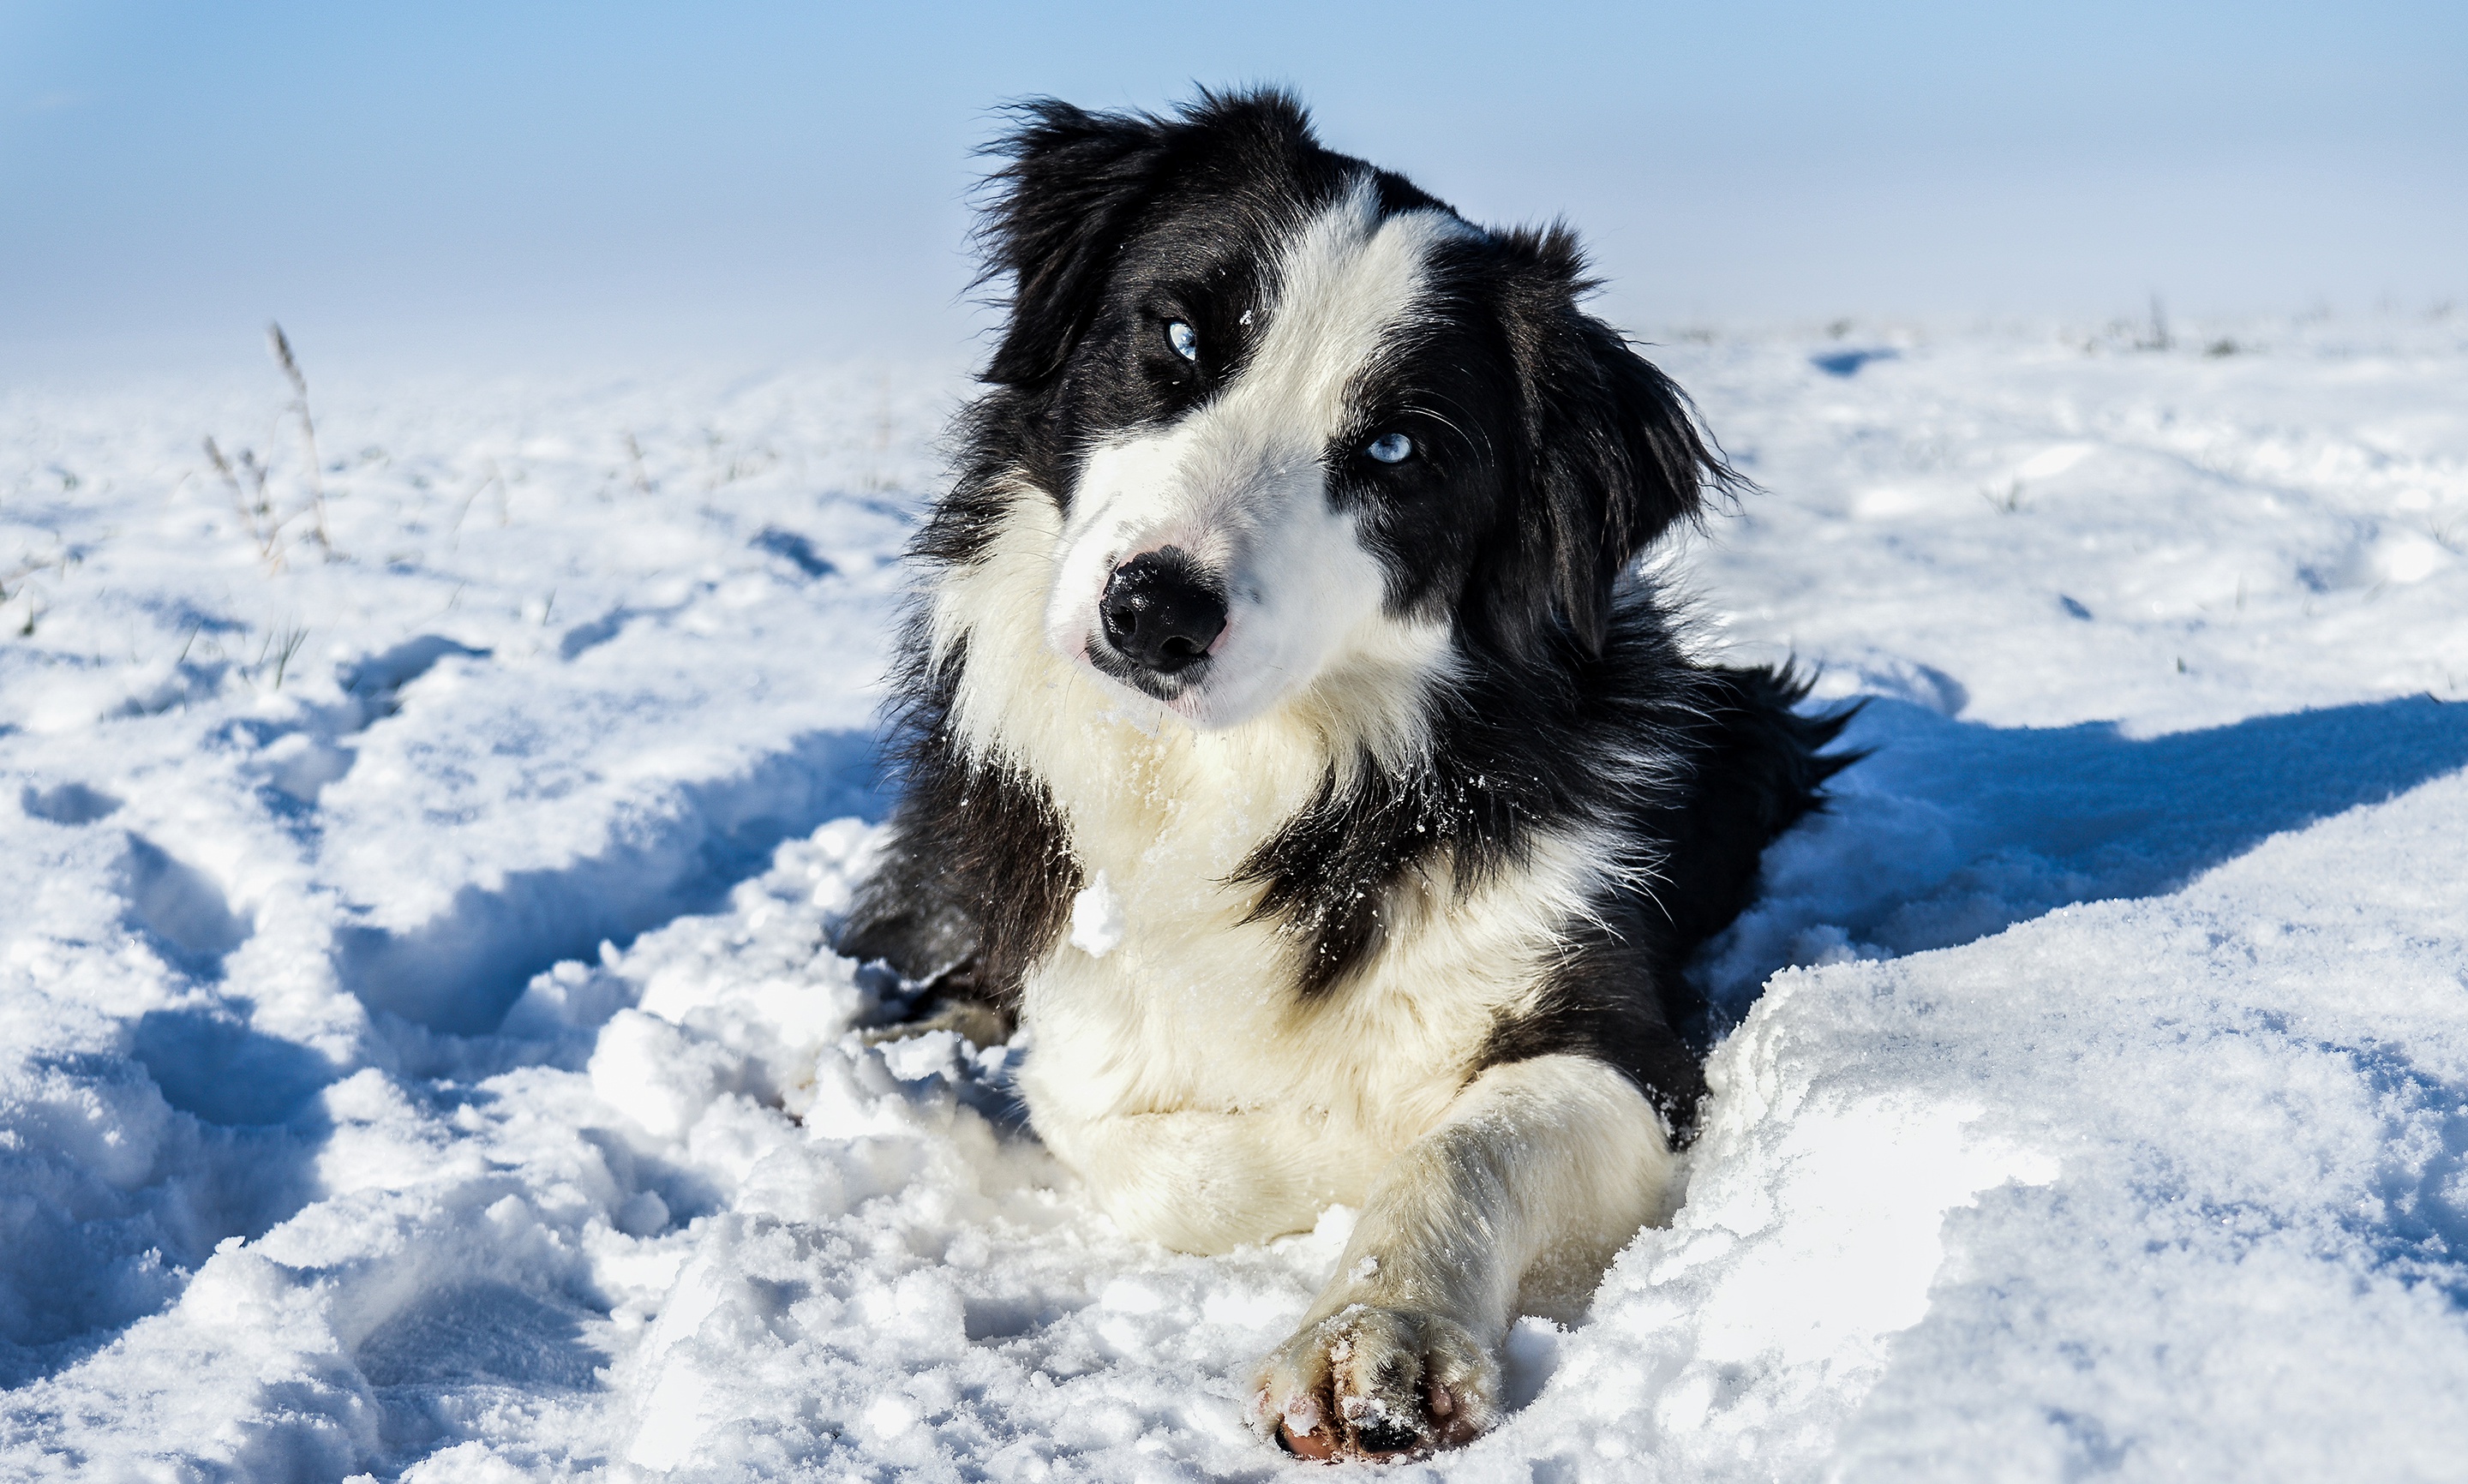 Скачать обои бесплатно Животные, Зима, Собаки, Снег, Собака, Бордер Колли картинка на рабочий стол ПК